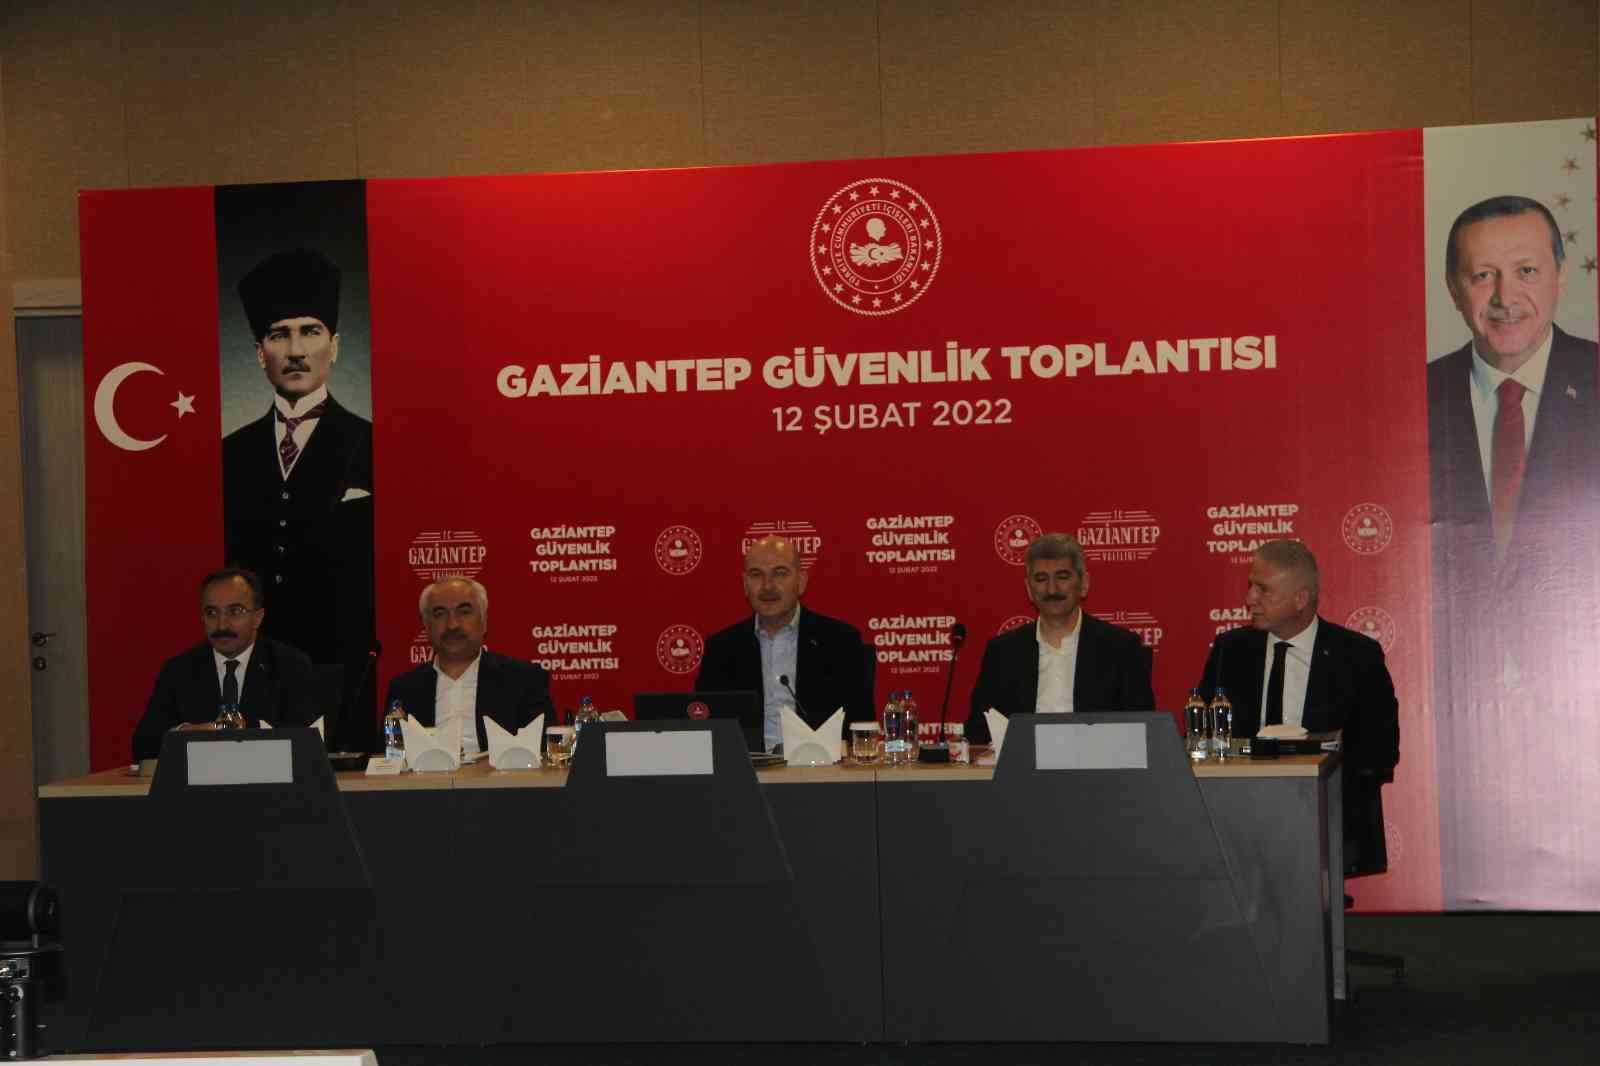 Bakan Soylu Gaziantep’te güvenlik toplantısına katıldı #gaziantep